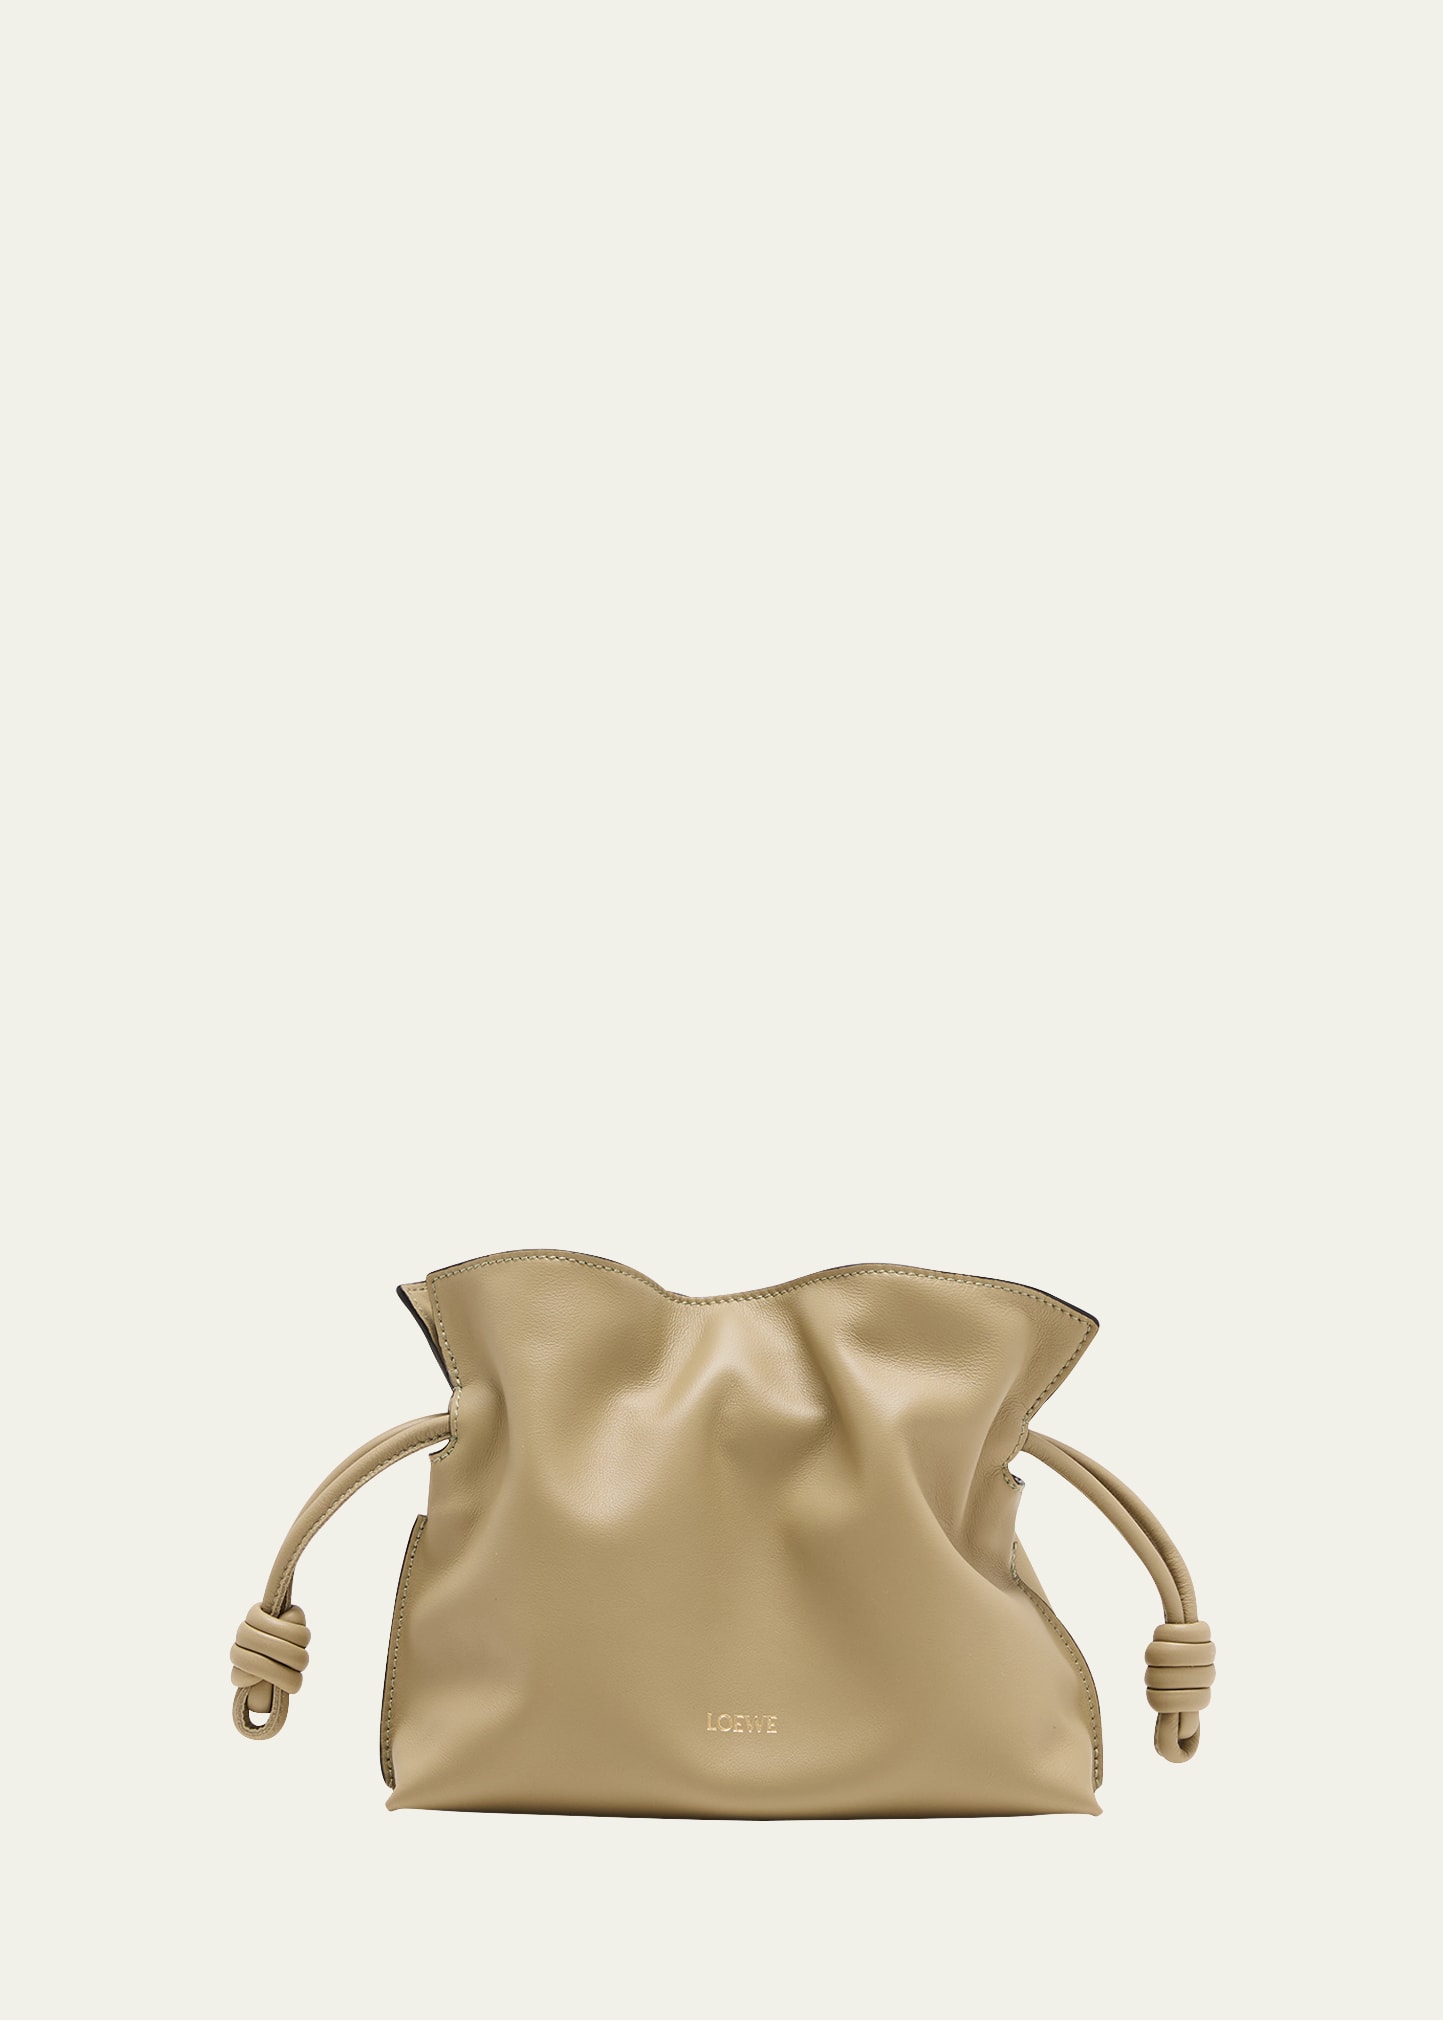 Loewe Flamenco Mini Leather Clutch Bag In Clay Green